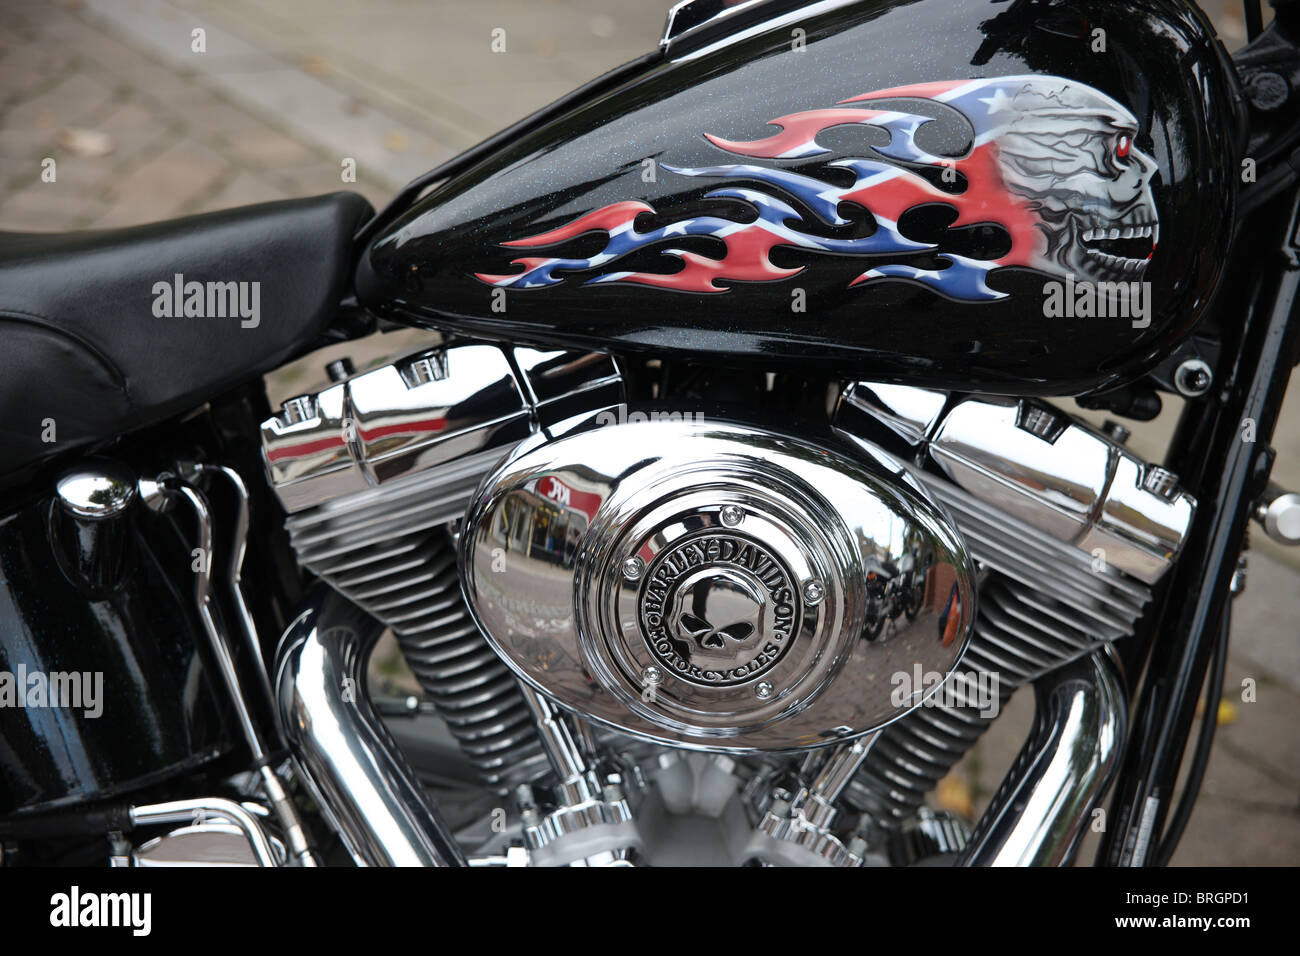 Custom Harley Davidson il motore e il serbatoio della benzina con i dettagli del cranio. Foto Stock